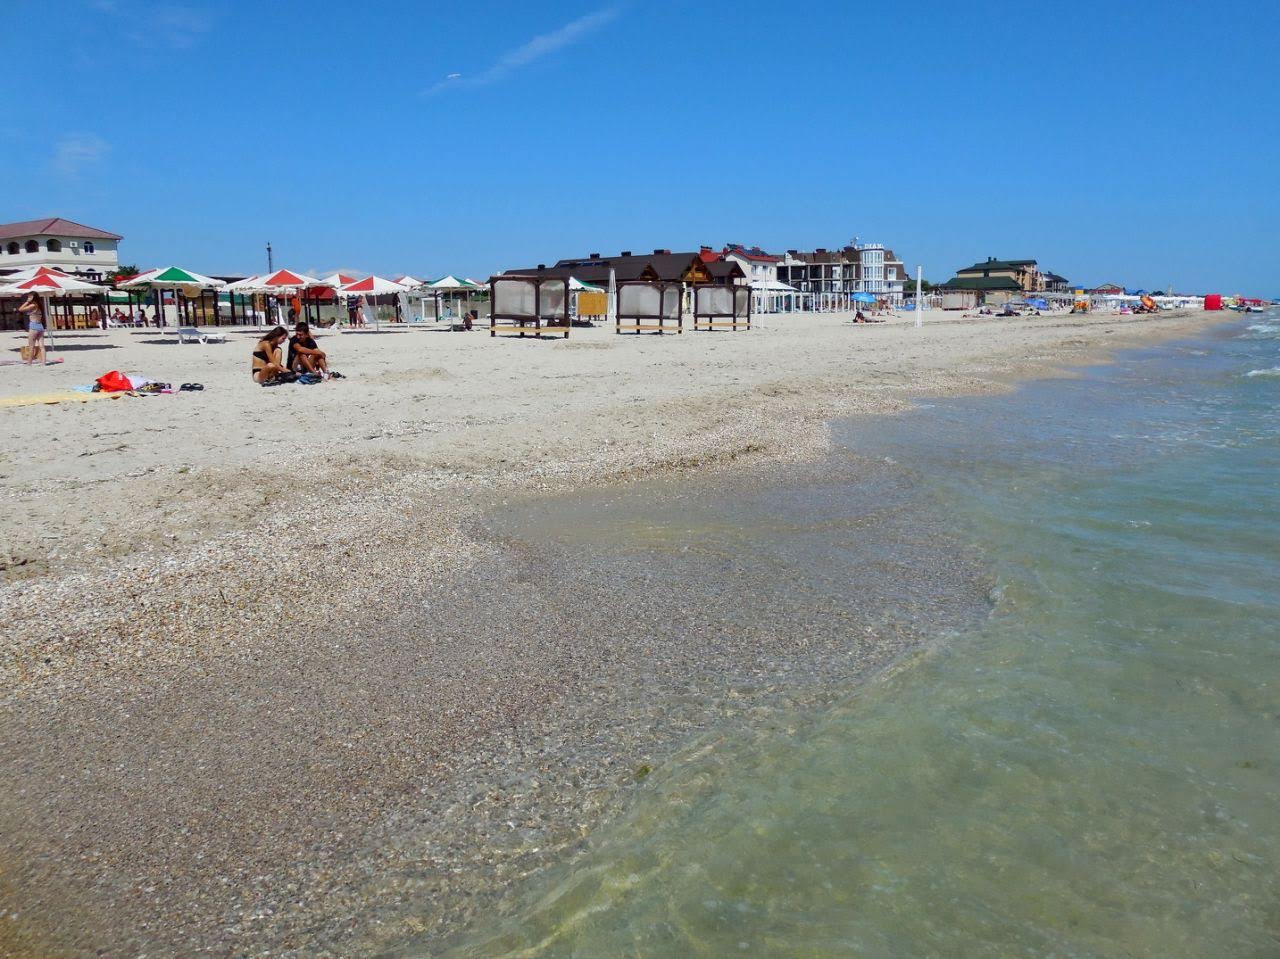 Zdjęcie Zheleznyy Port II z powierzchnią jasny piasek